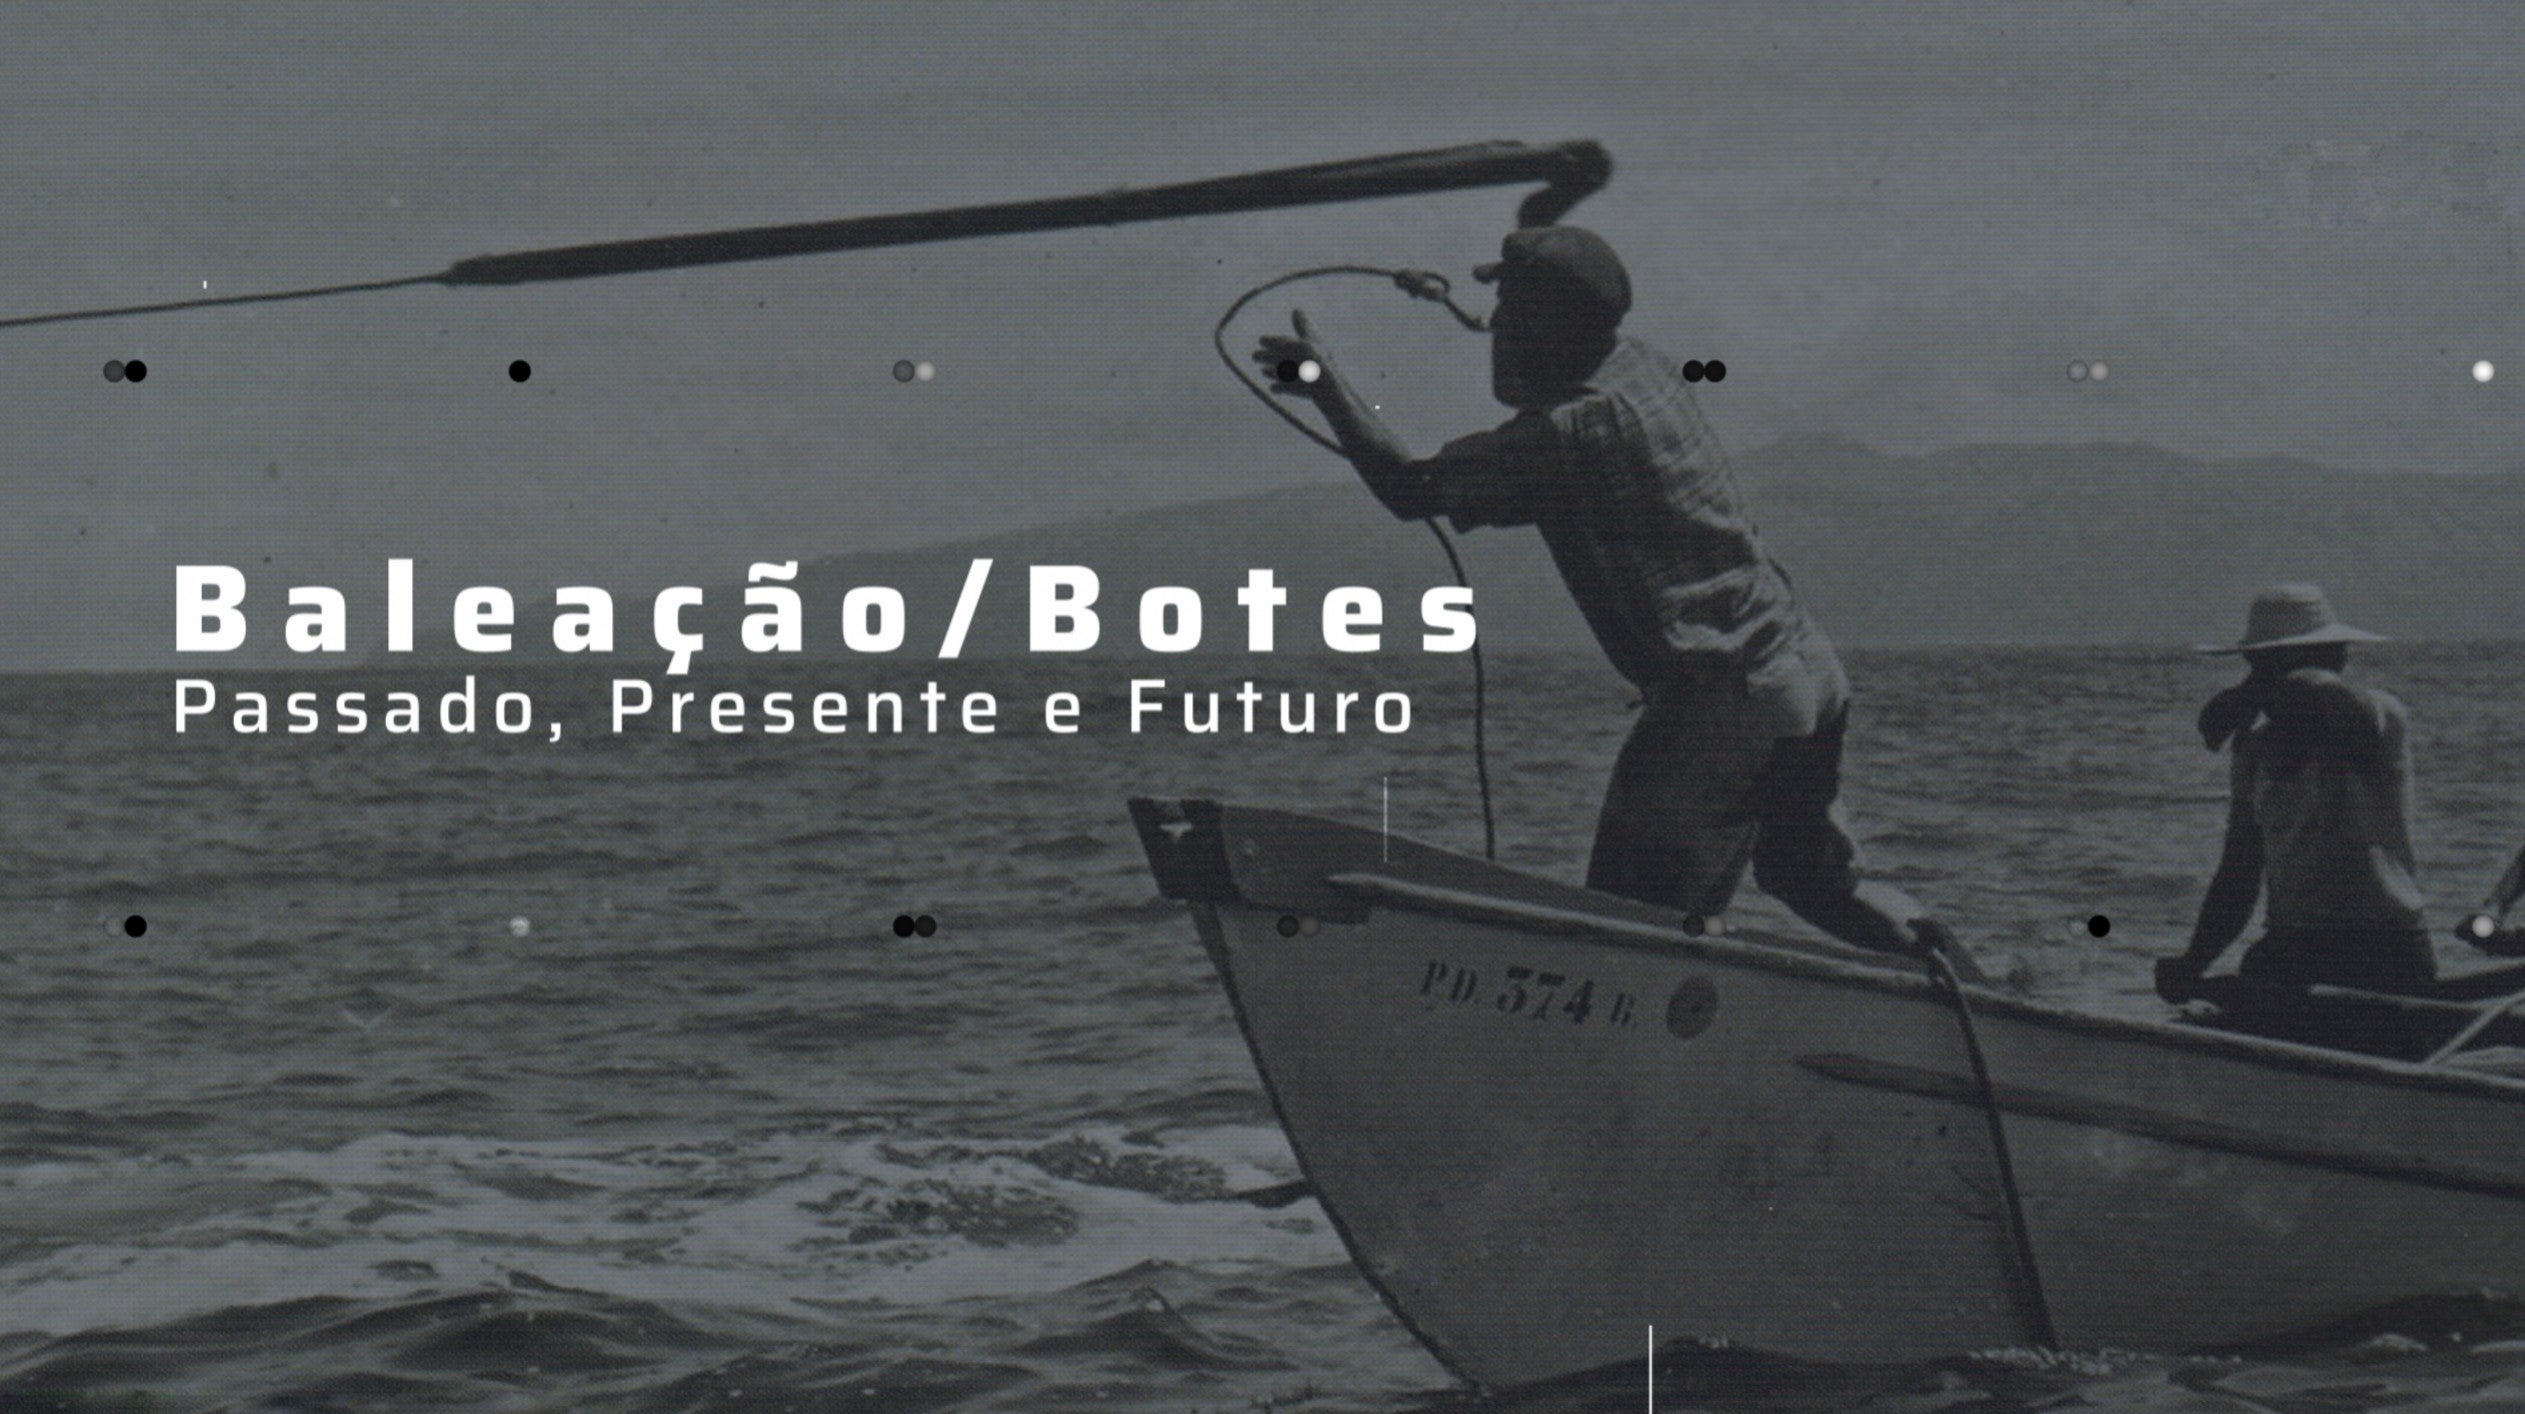 Baleao/Botes, Passado, Presente e Futuro